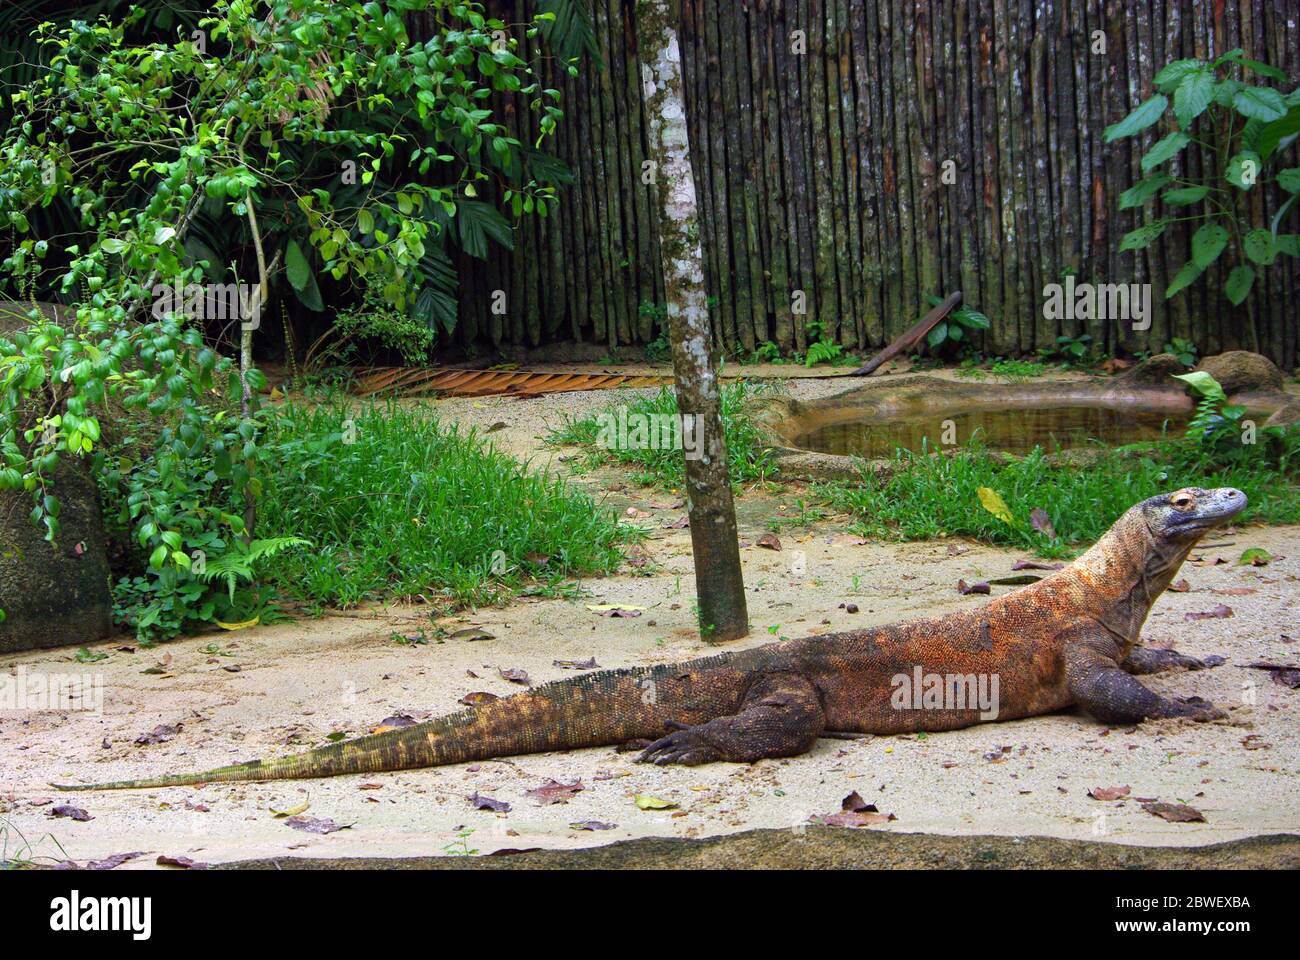 Komodo dragon, Varanus komodoensis Stock Photo